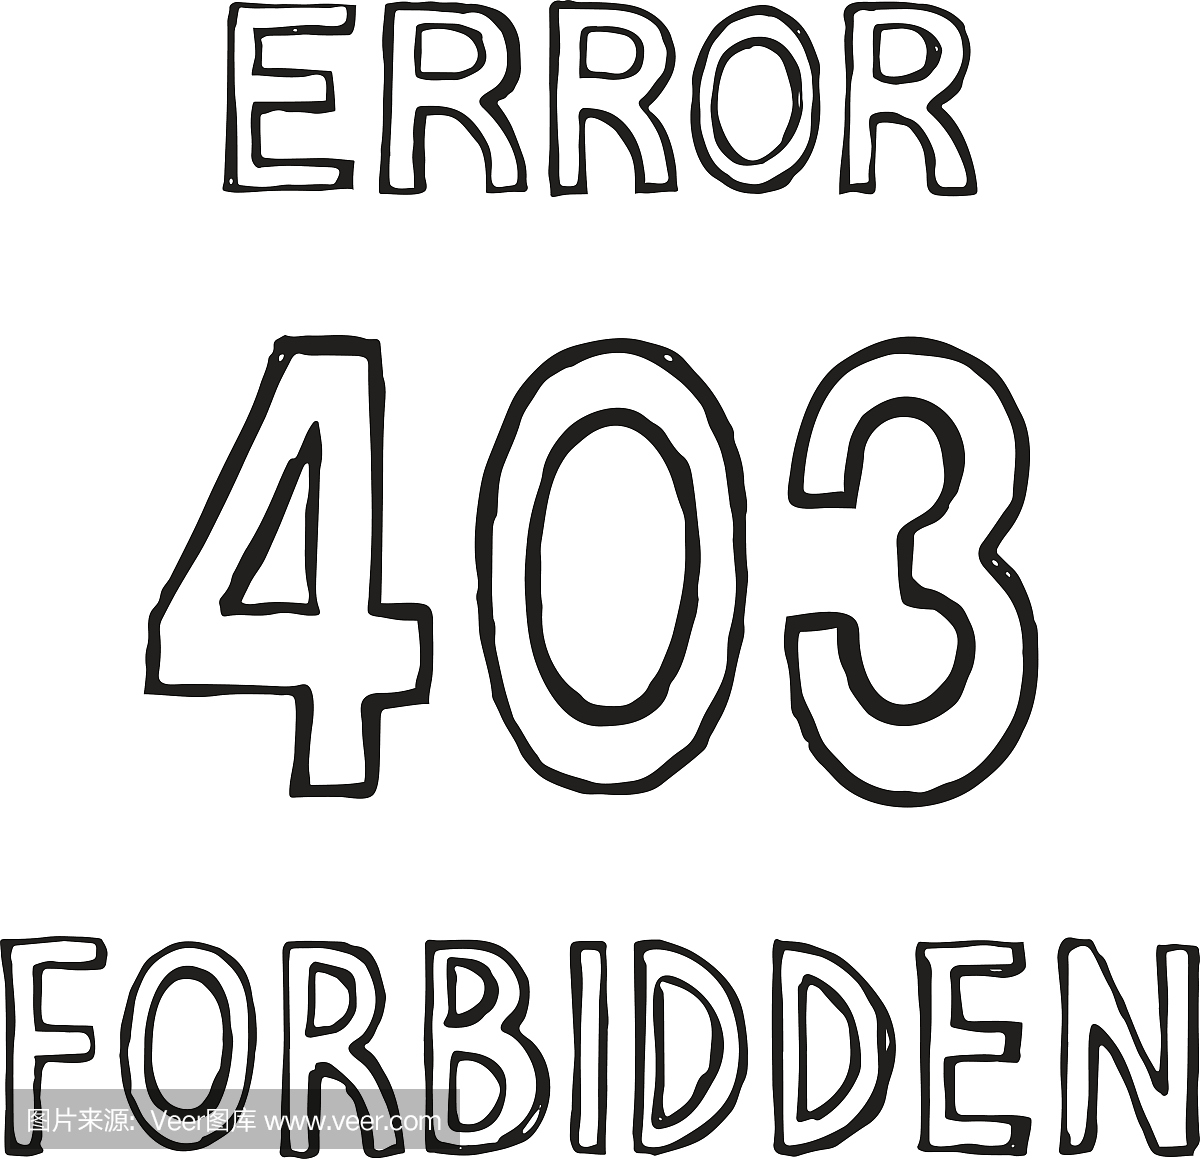 403连接错误。